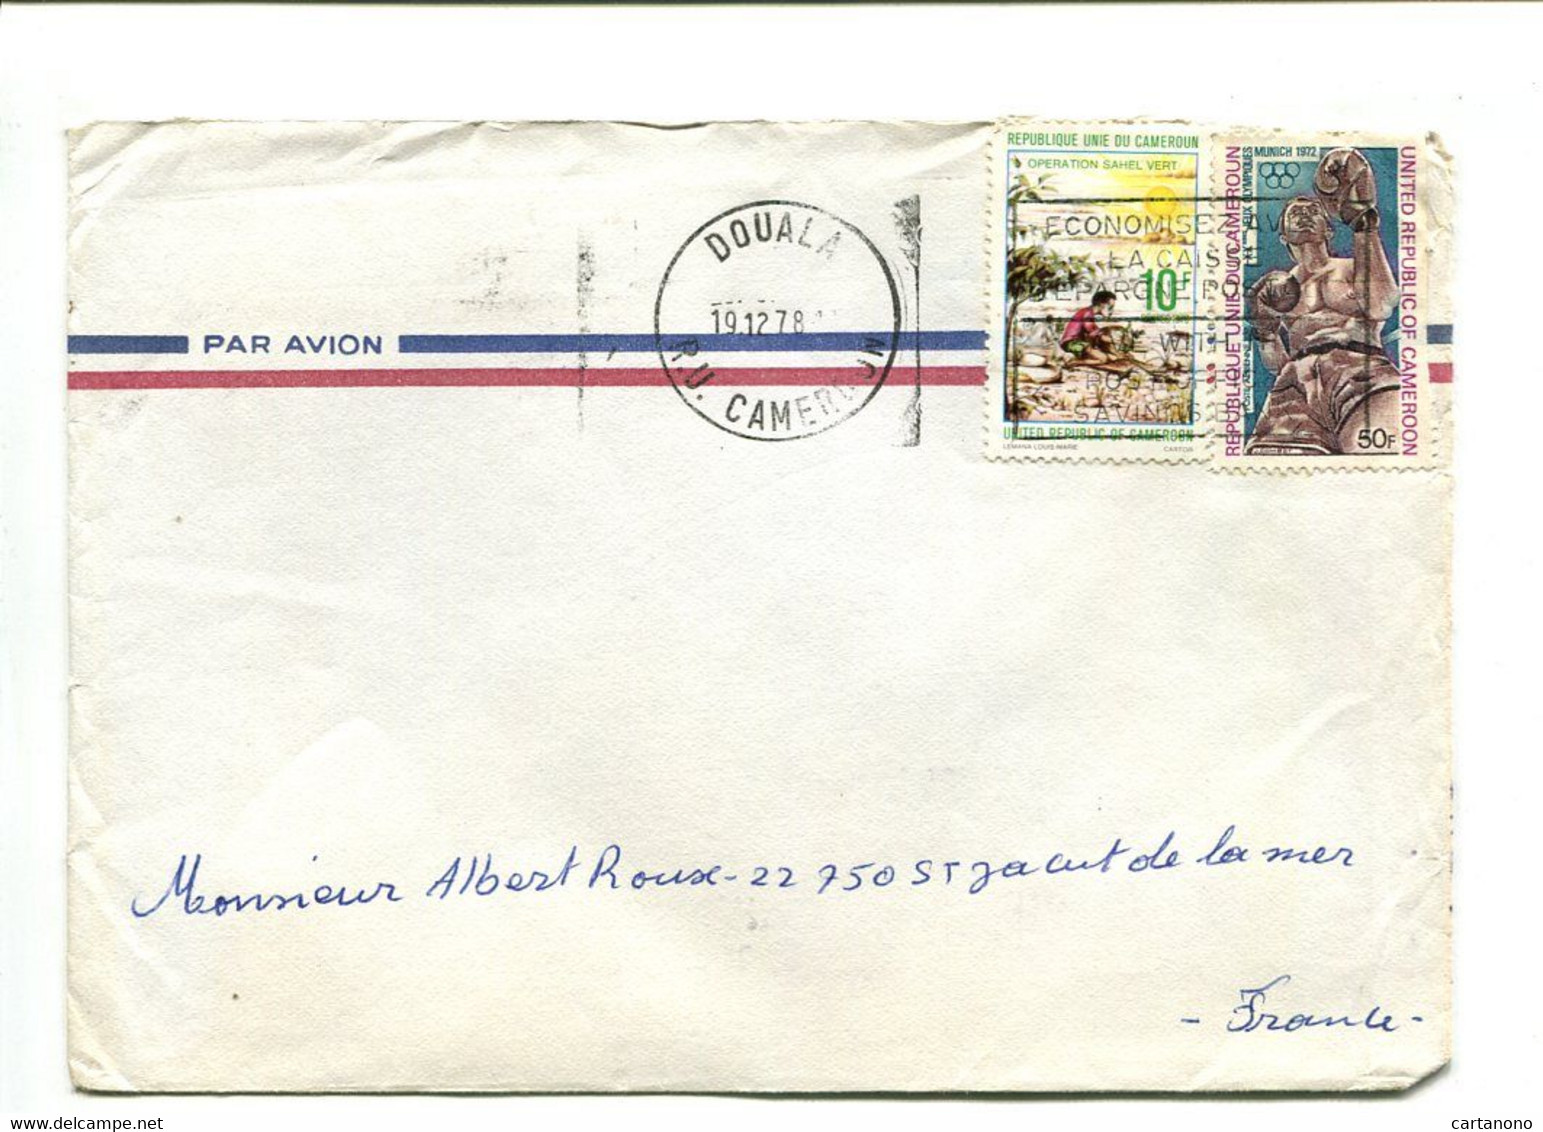 CAMEROUN Yaounde 1979 - Affranchissement Sur Lettre Par Avion - - Camerun (1960-...)